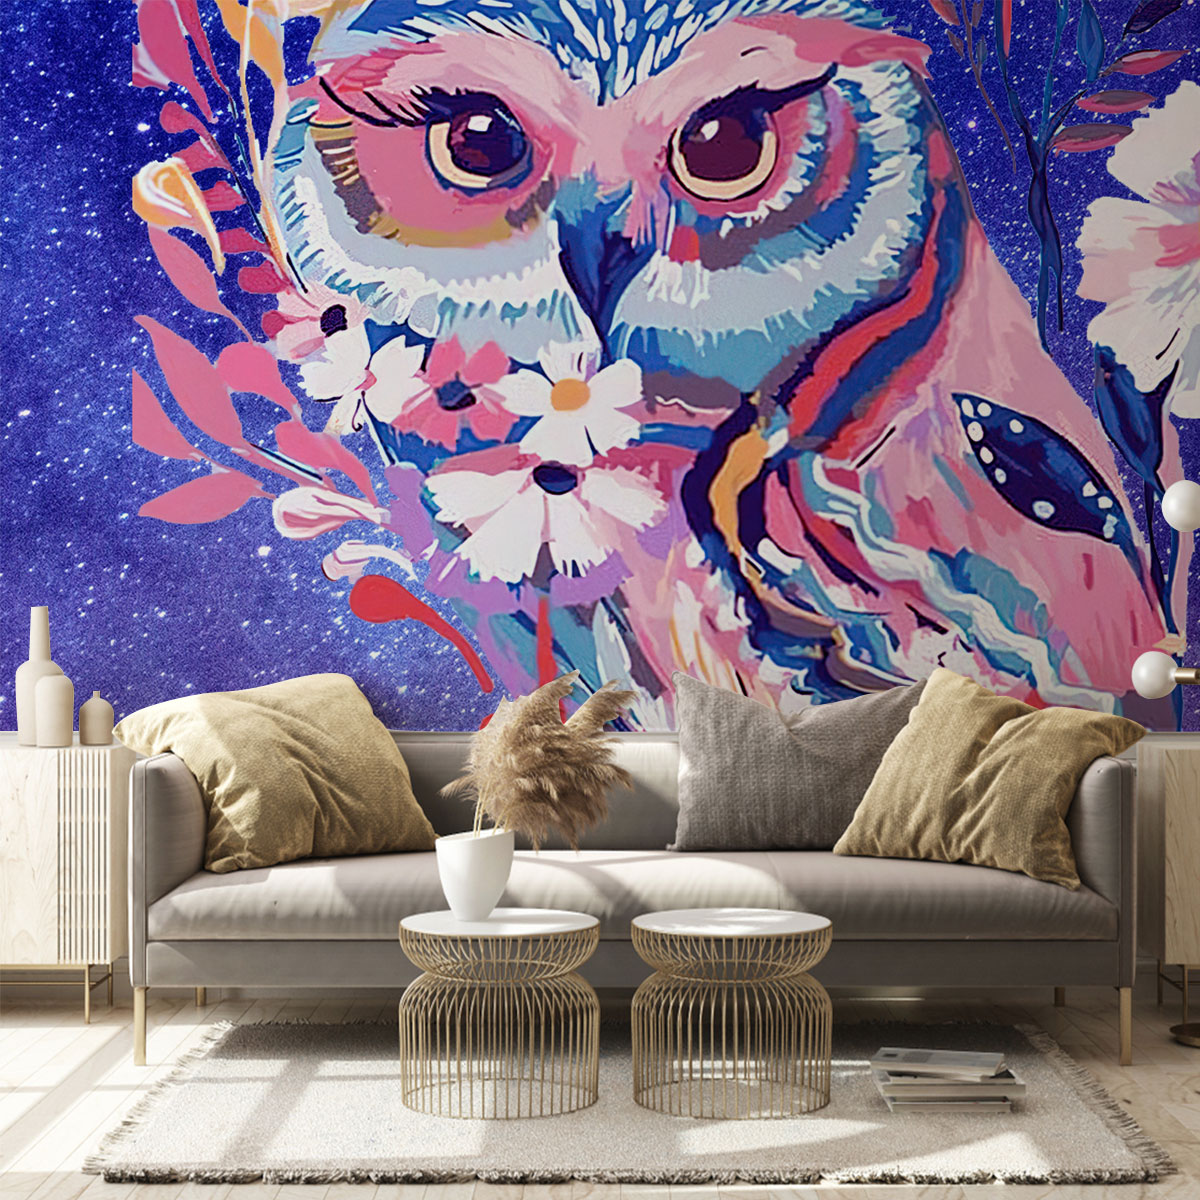 Galaxy Owl Wall Mural_2_1